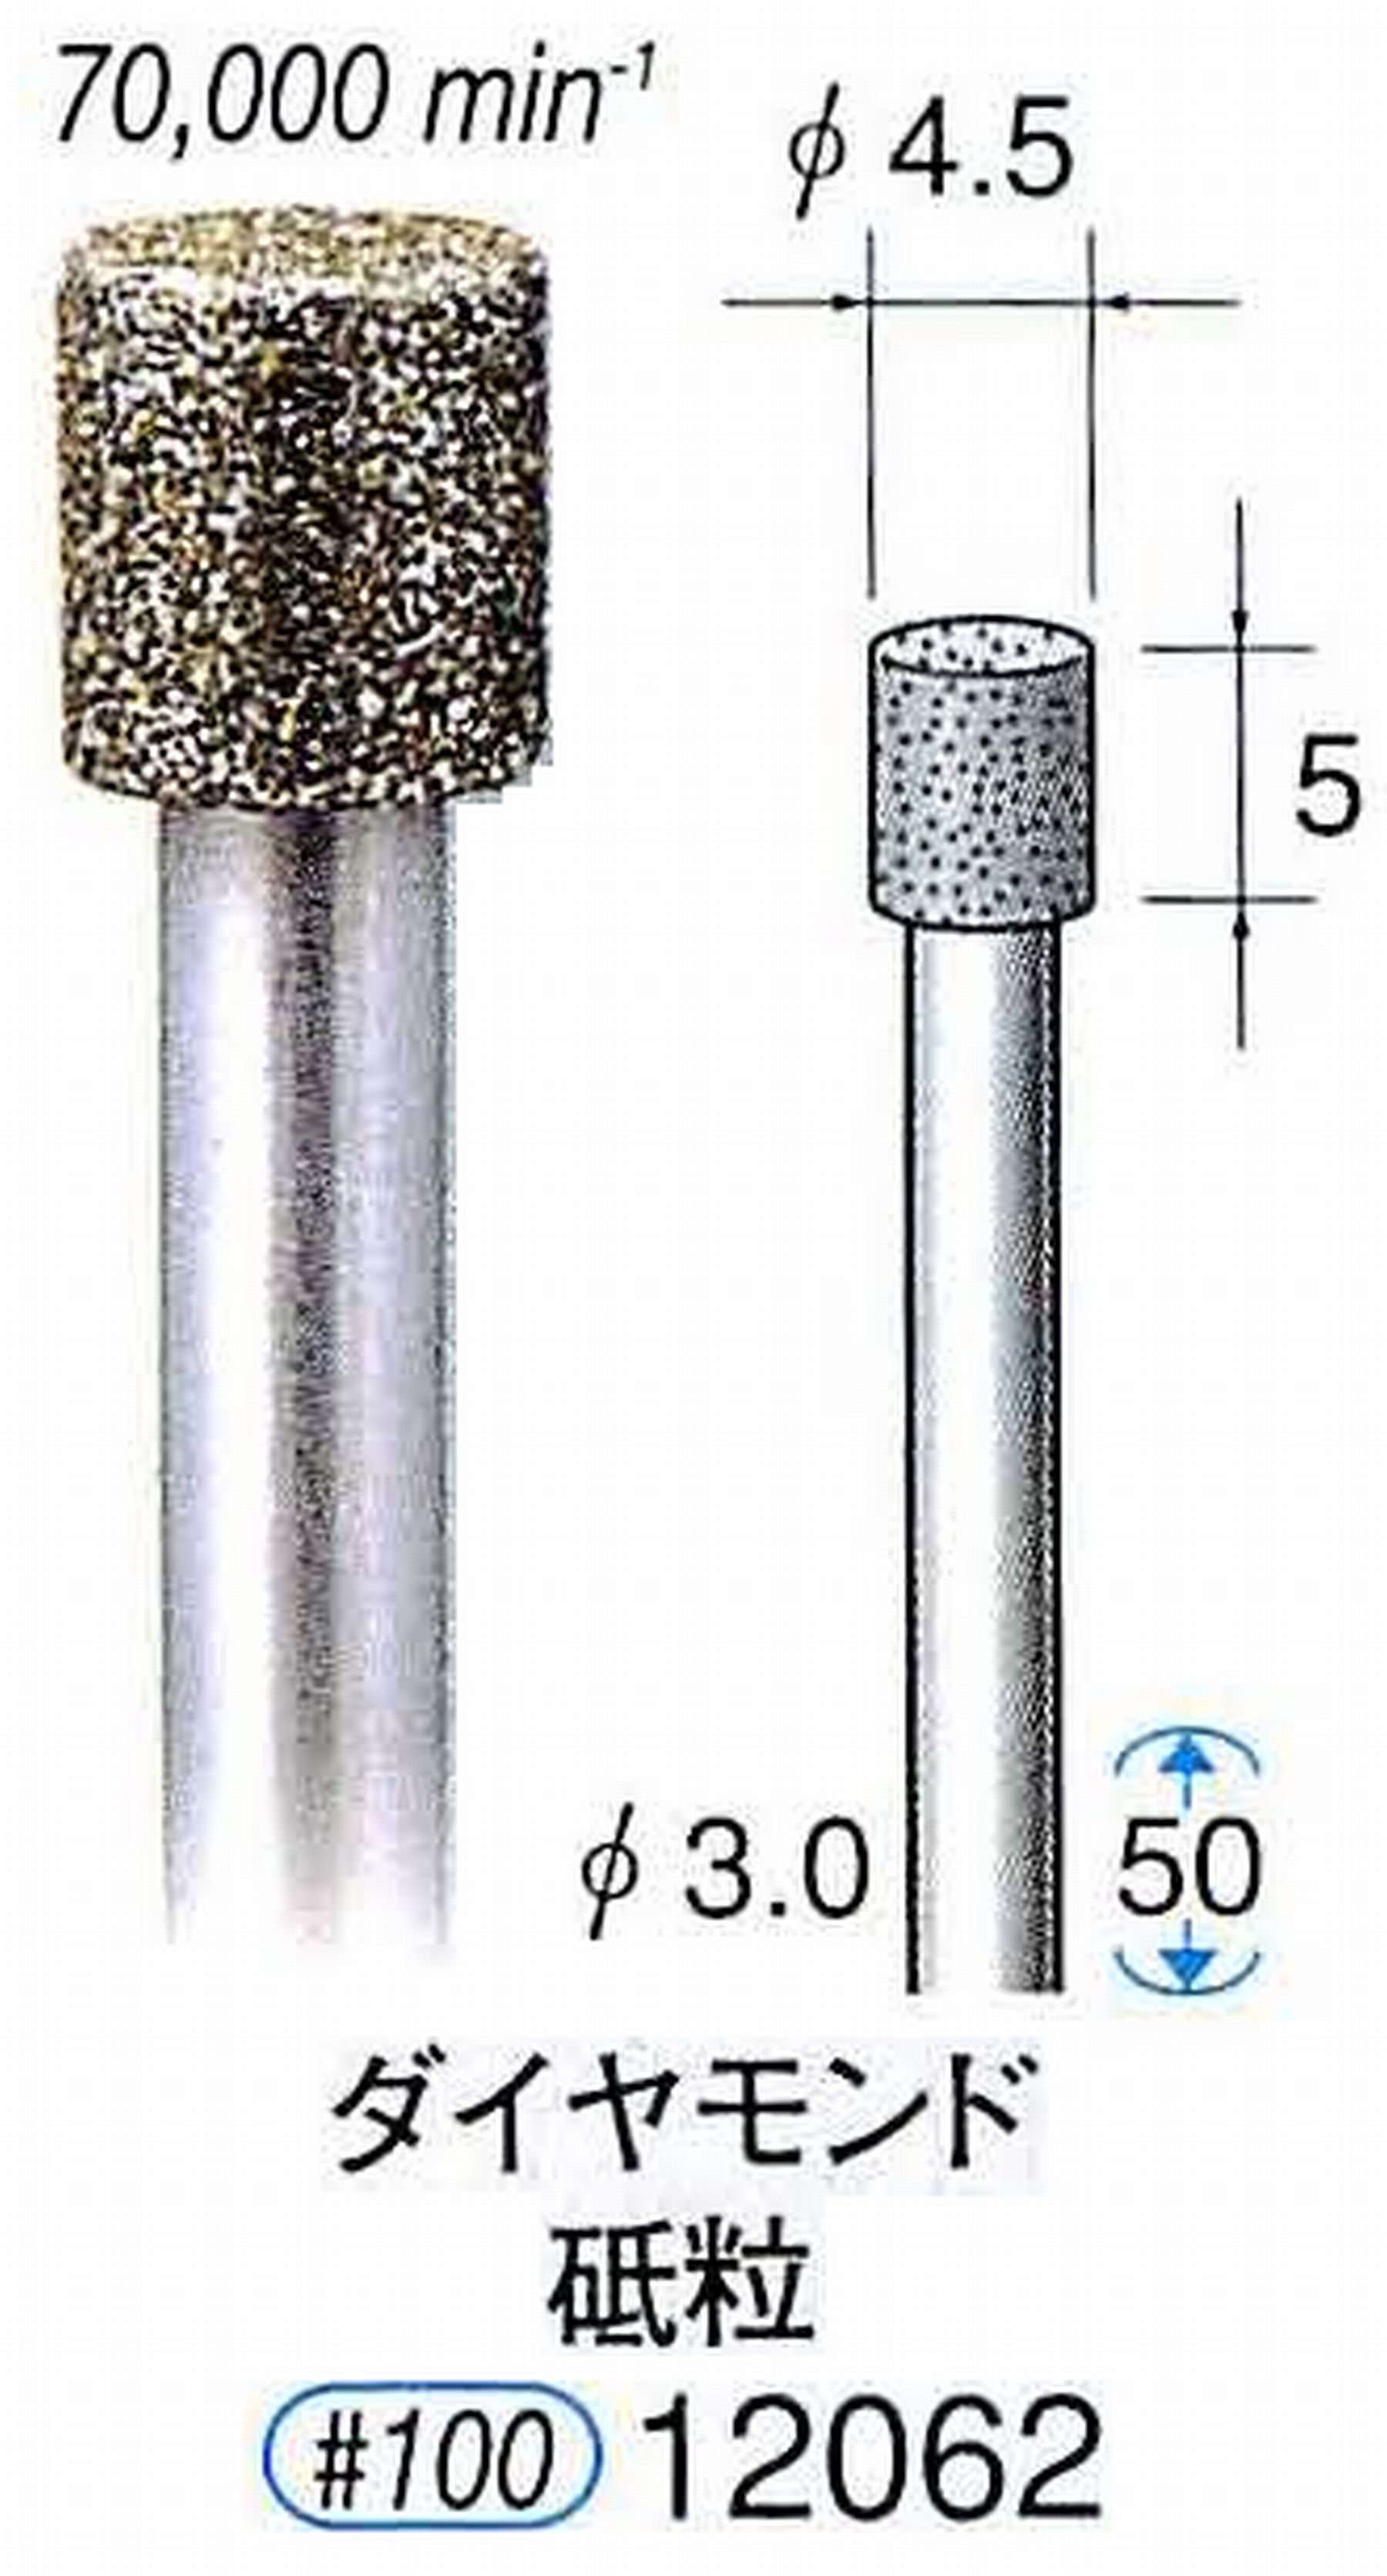 ナカニシ/NAKANISHI 電着ダイヤモンド ダイヤモンド砥粒 軸径(シャンク)φ3.0mm 12062